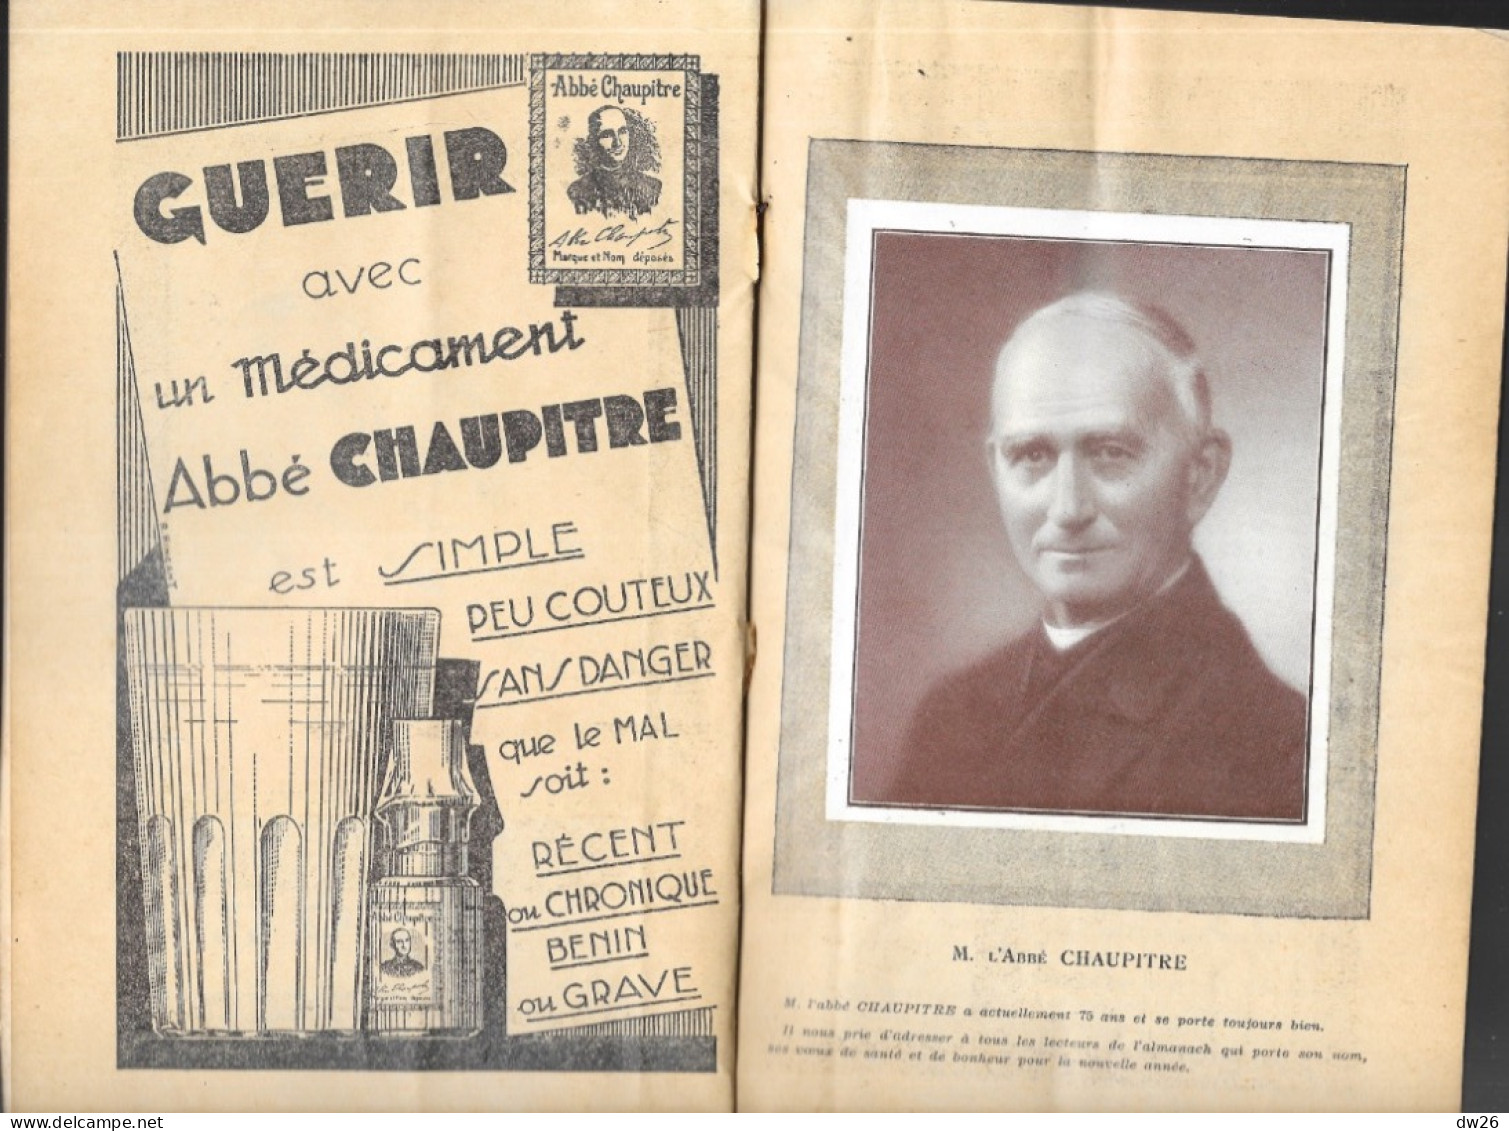 Almanach Abbé Chaupitre 1934 à L'Usage Des Bien Portants Et Des Malades - Conseils Soins, Hygiène, Recettes - Santé